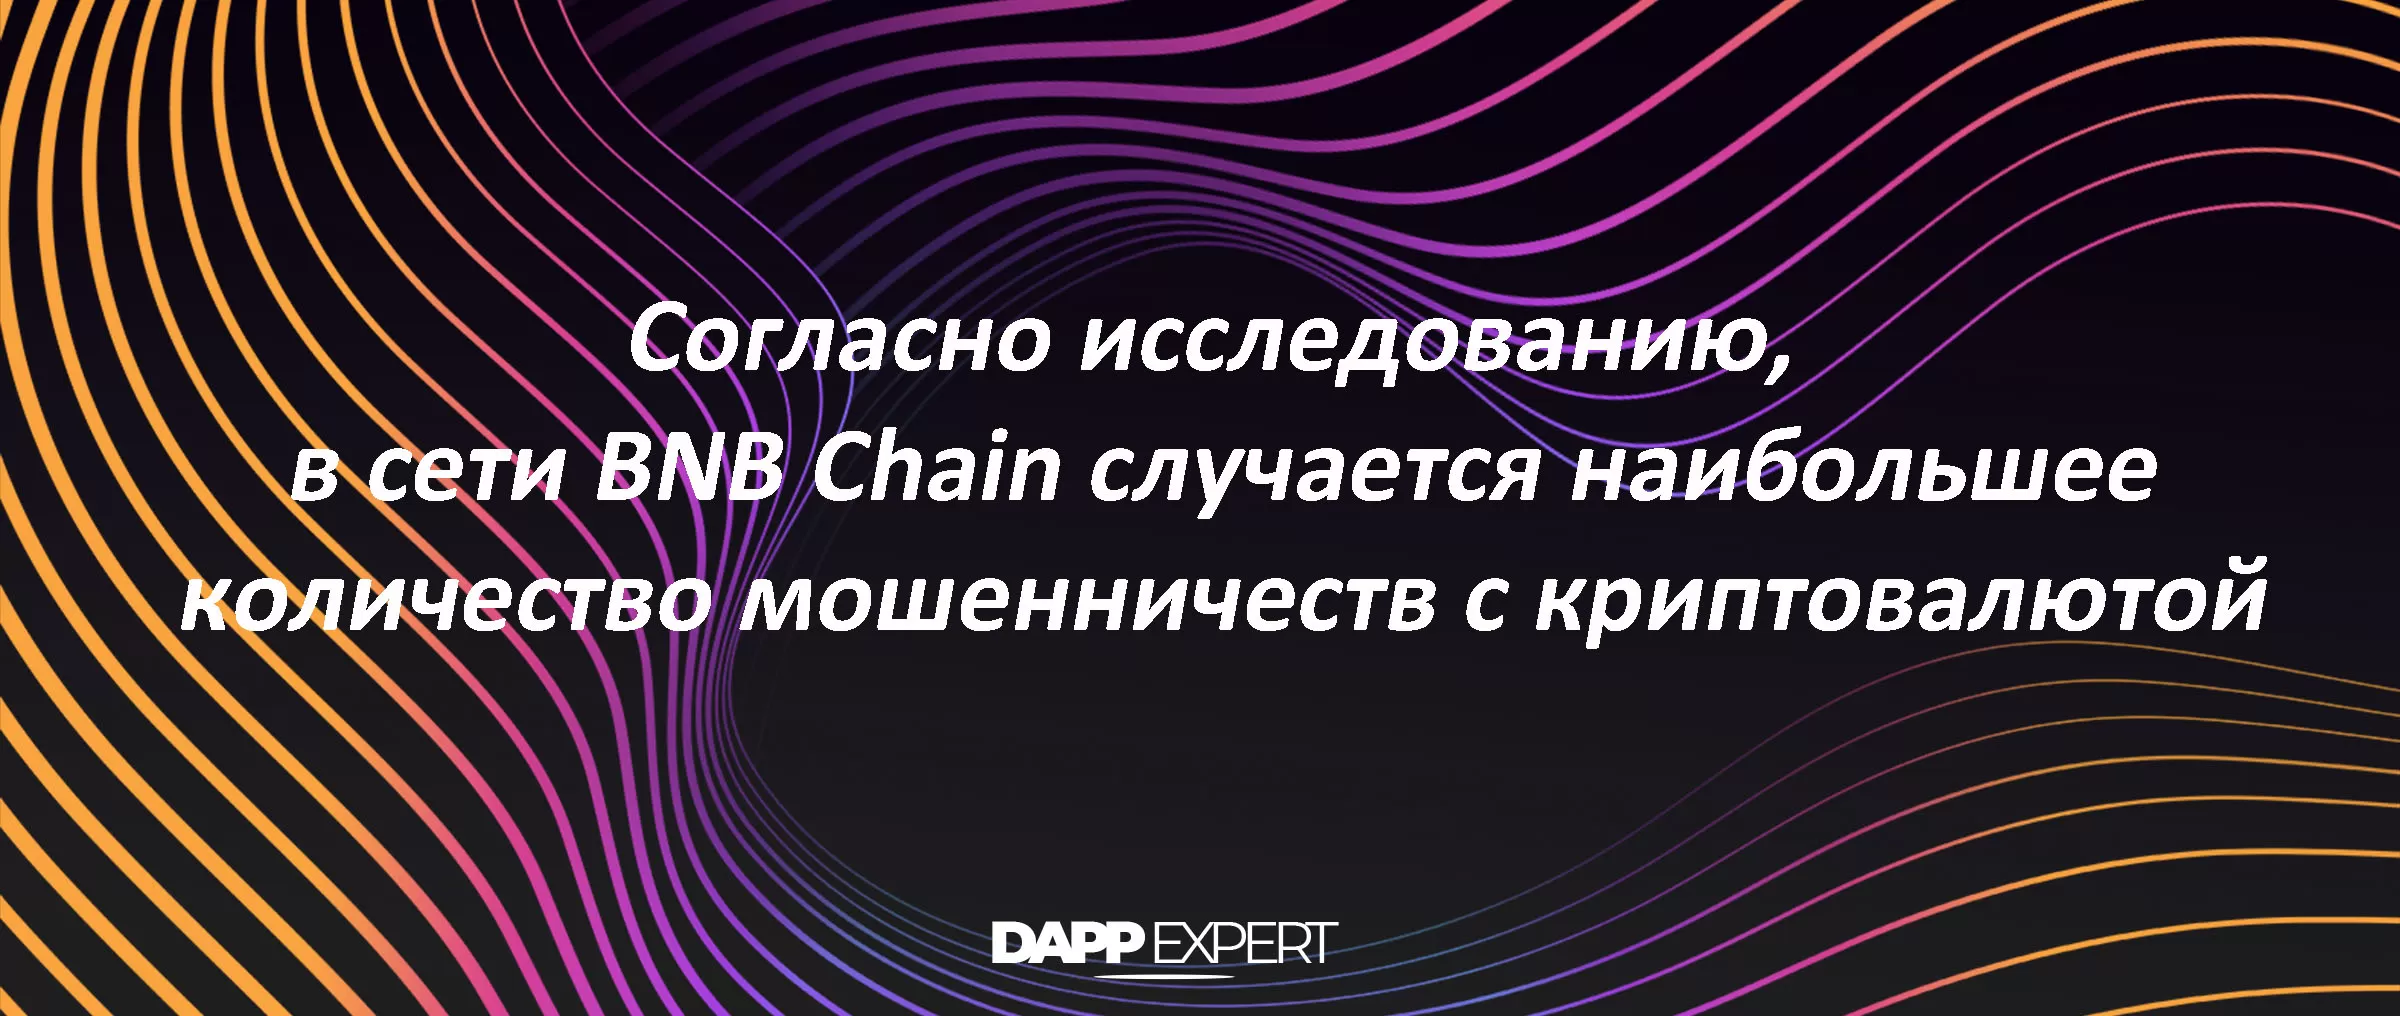 Блокчейн BNB Chain насчитывает большое  количество мошеннических операций с криптовалютами